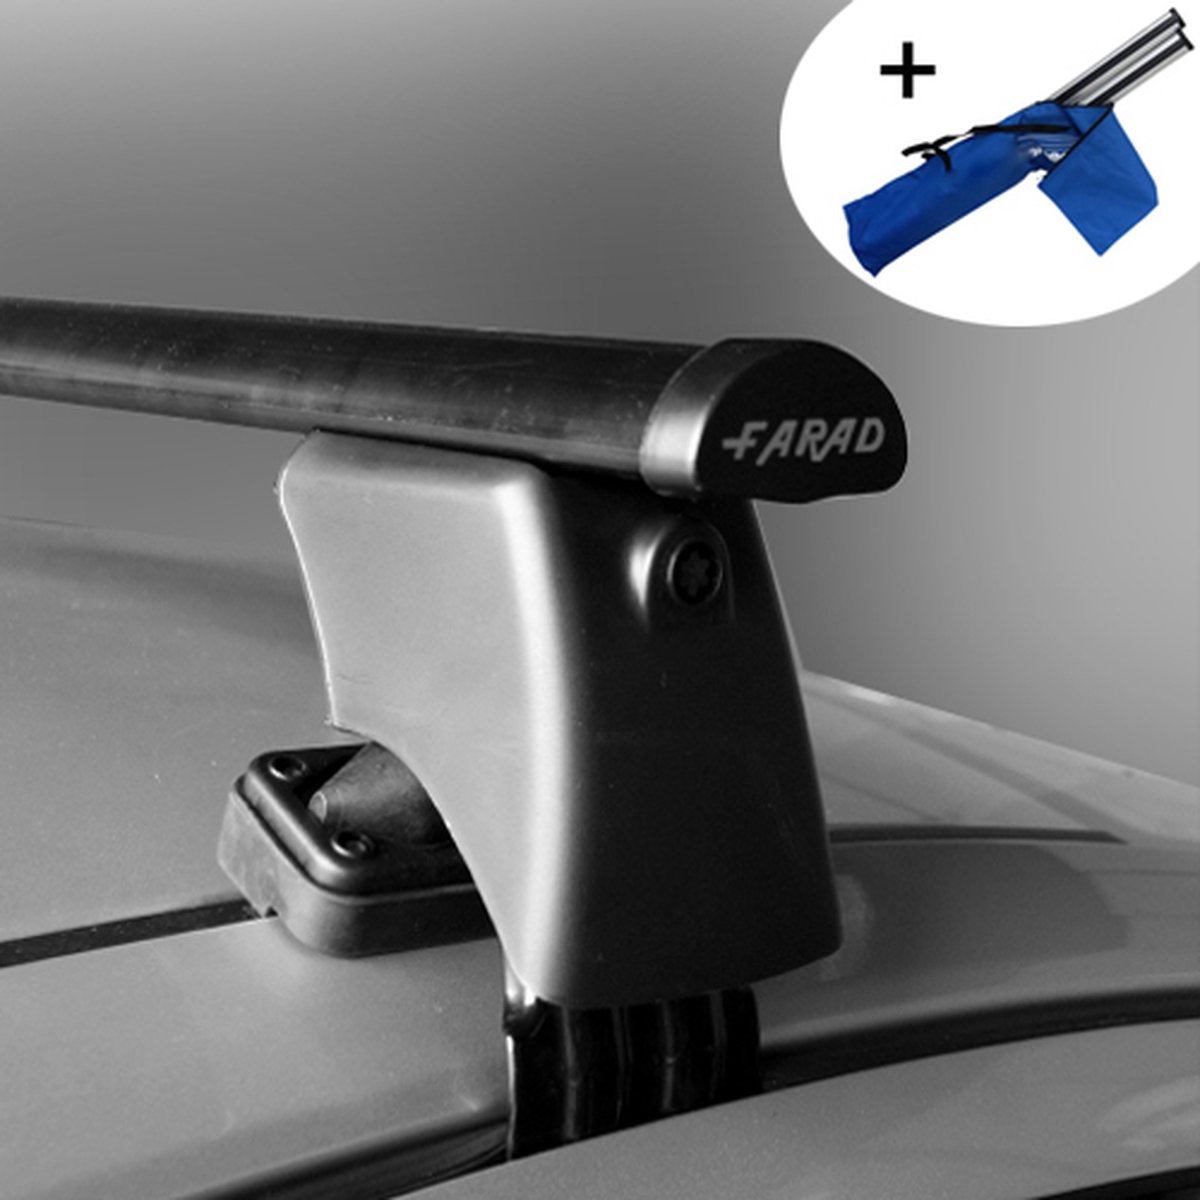 Dakdragers geschikt voor Citroen C4 Picasso MPV vanaf 2013 - Staal - inclusief dakdrager opbergtas